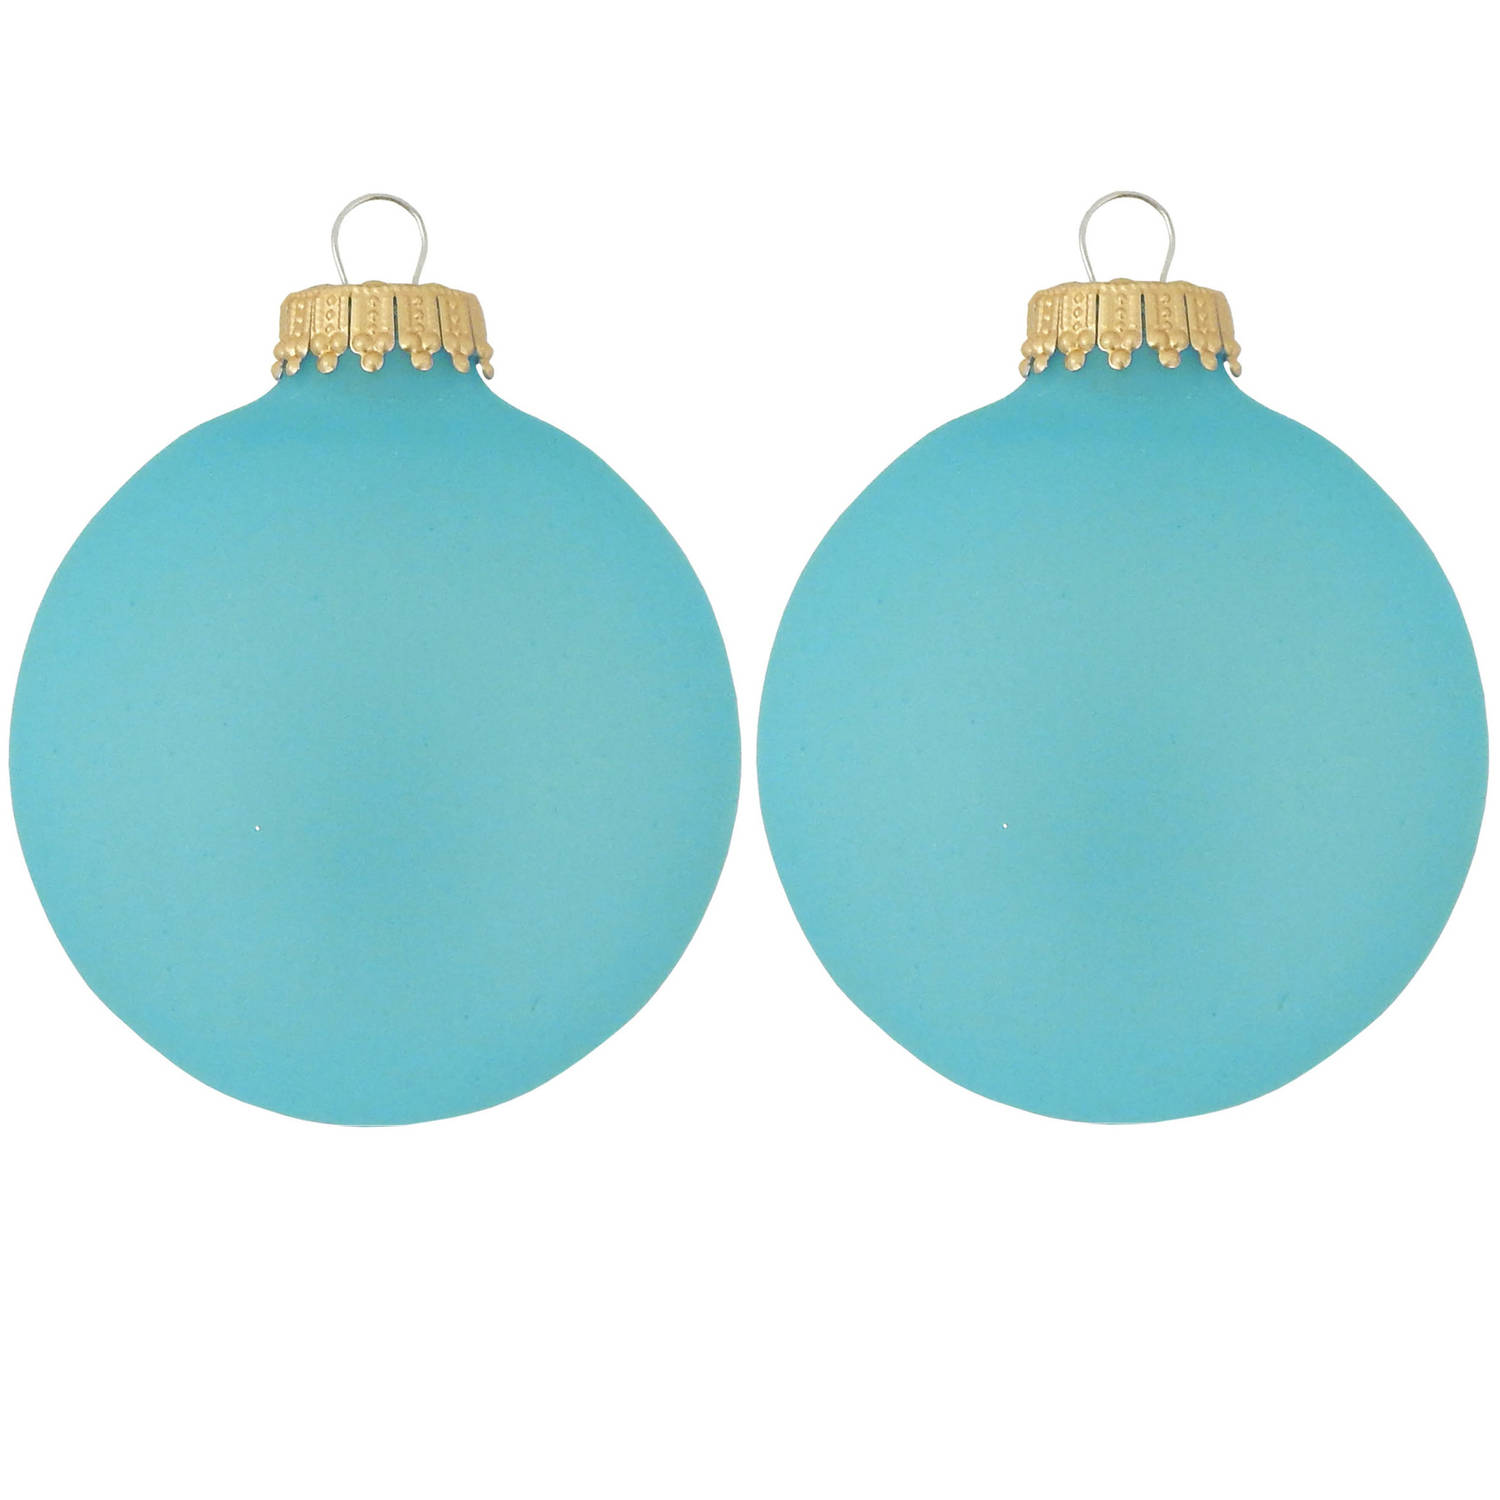 16x Spa Frost Blauwe Glazen Kerstballen Mat 7 Cm Kerstboomversiering Kerstversiering-kerstdecoratie 